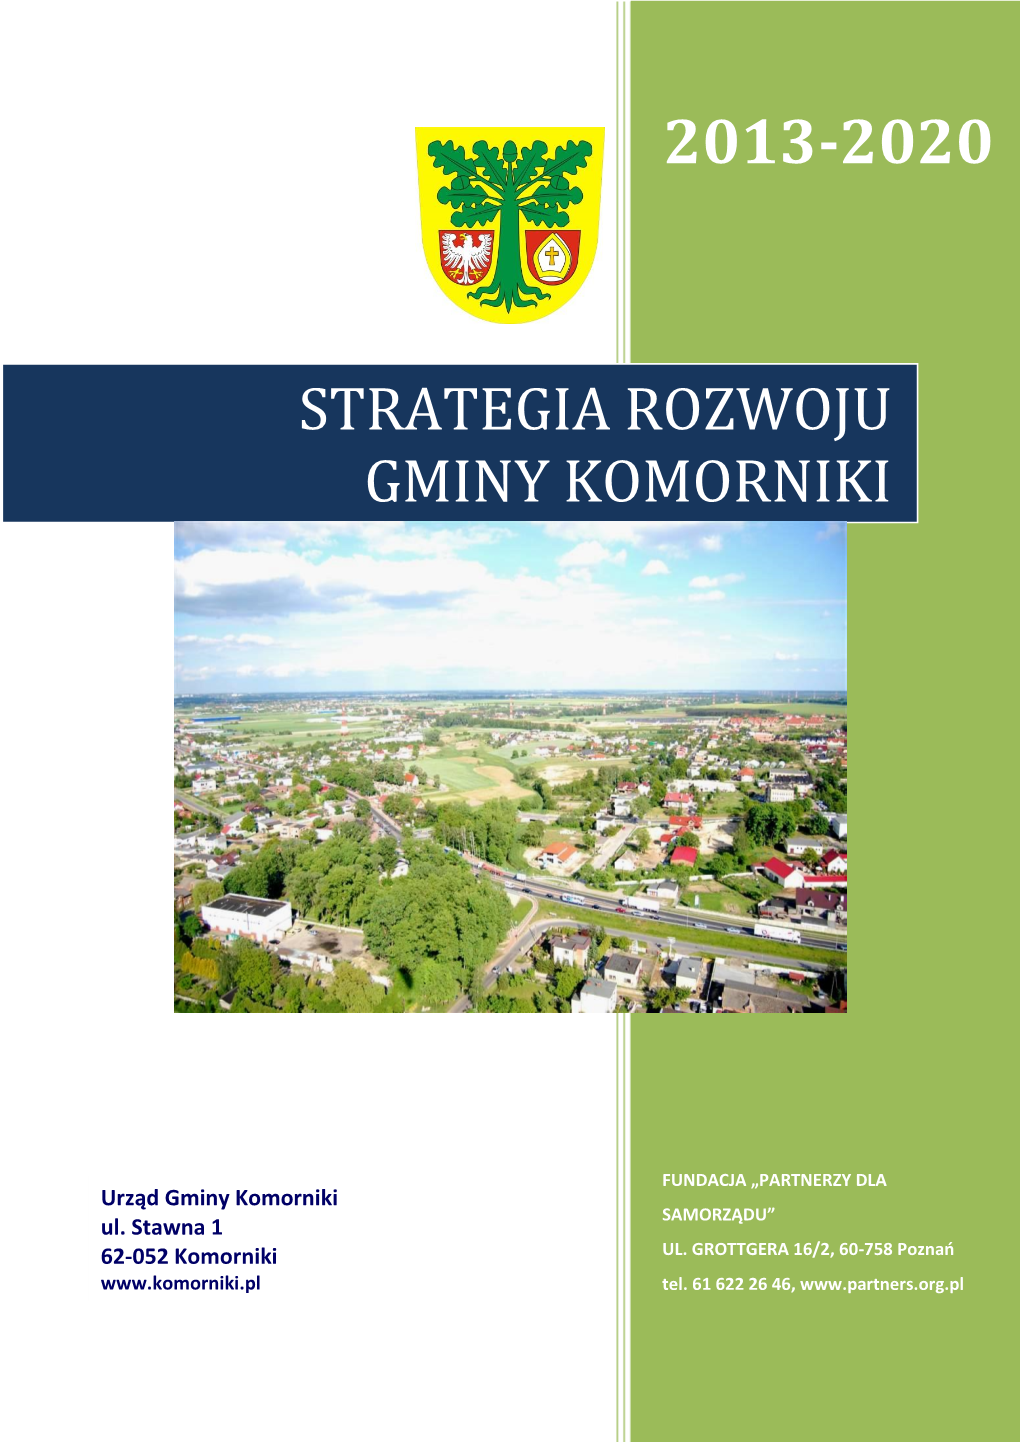 Strategia Rozwoju Gminy Komorniki 2013-2020